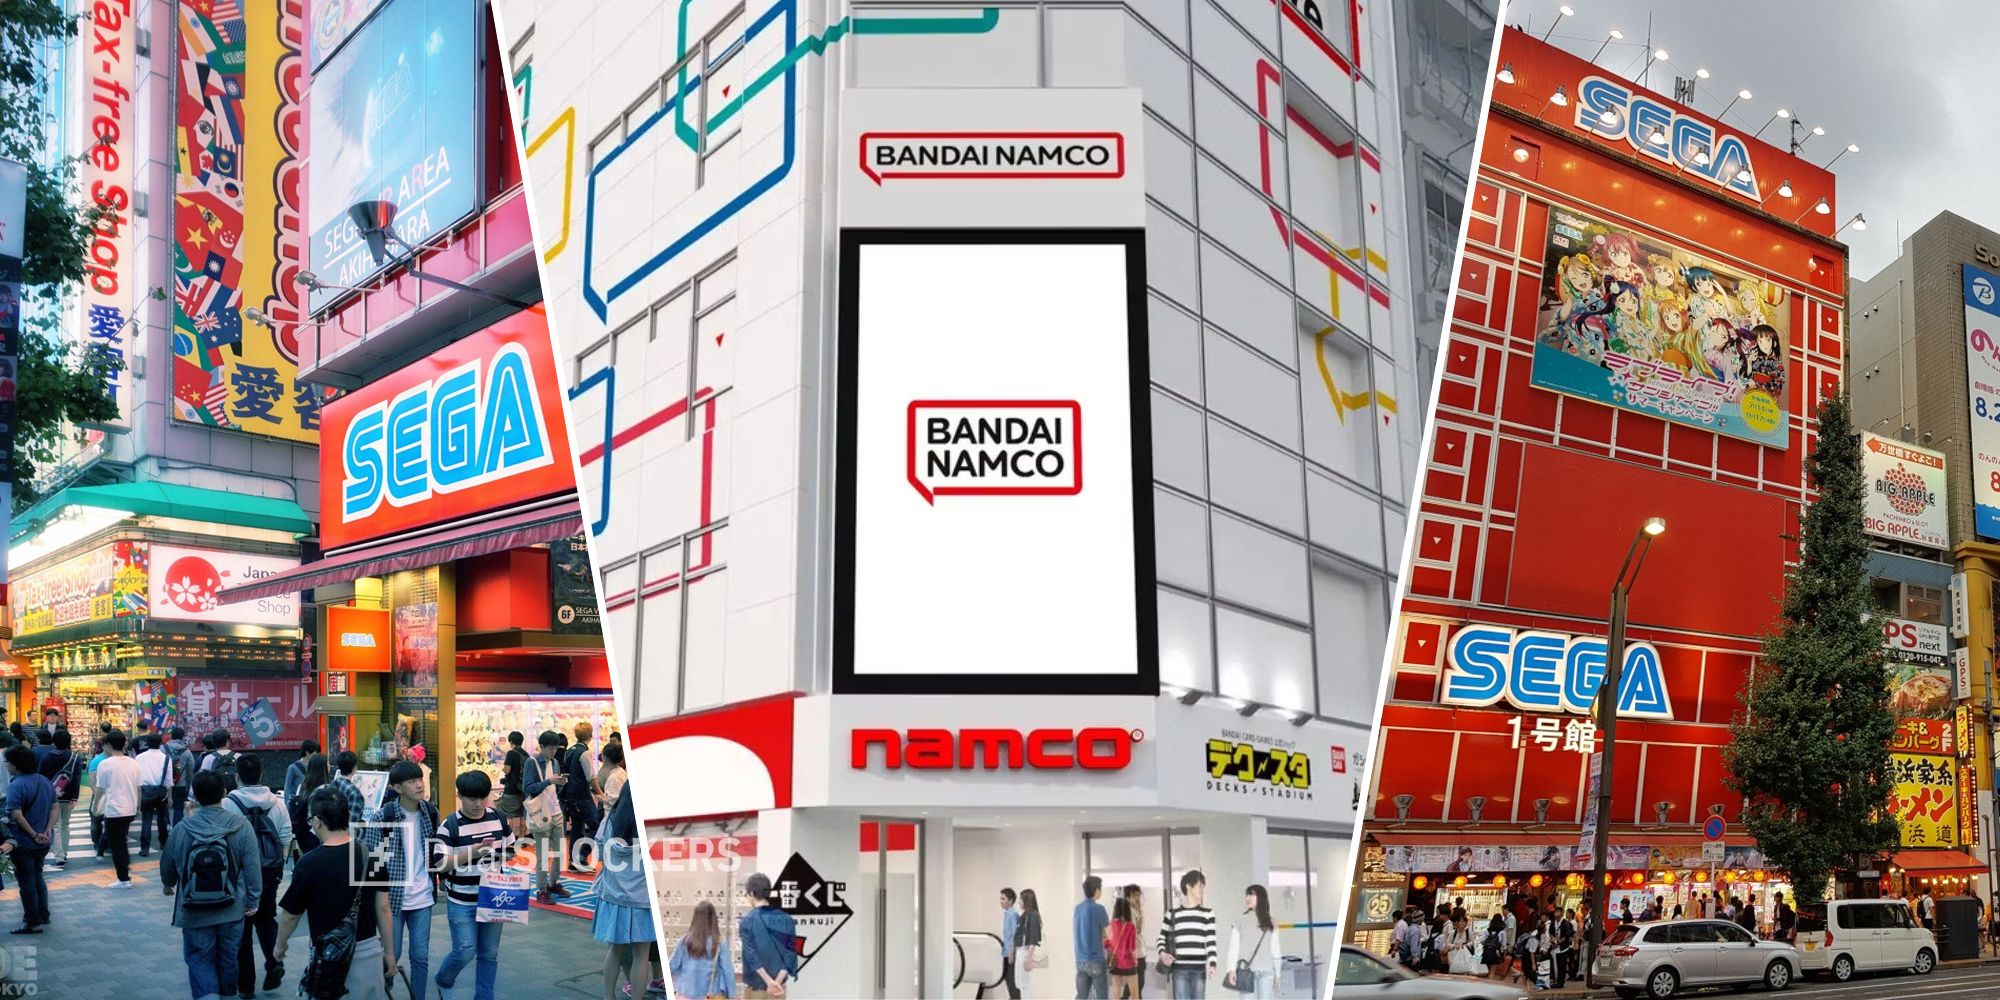 Sega Akihabara Arcade and Bandai Namco logo and concept art for new building